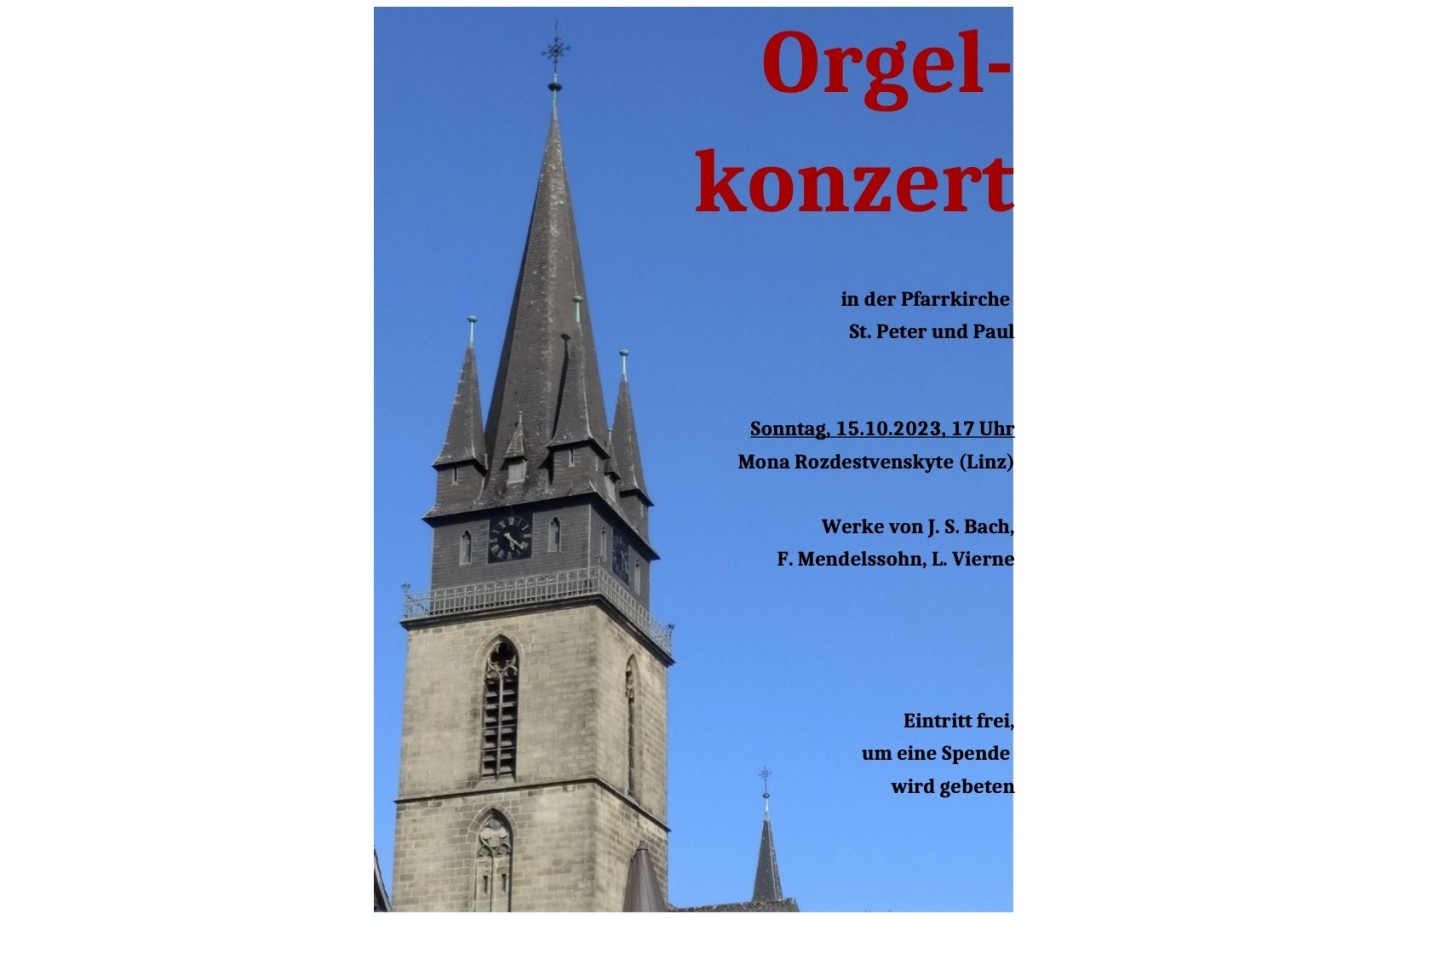 Orgelkonzert mit der Konzertorganistin Mona Rozdestvenskyte